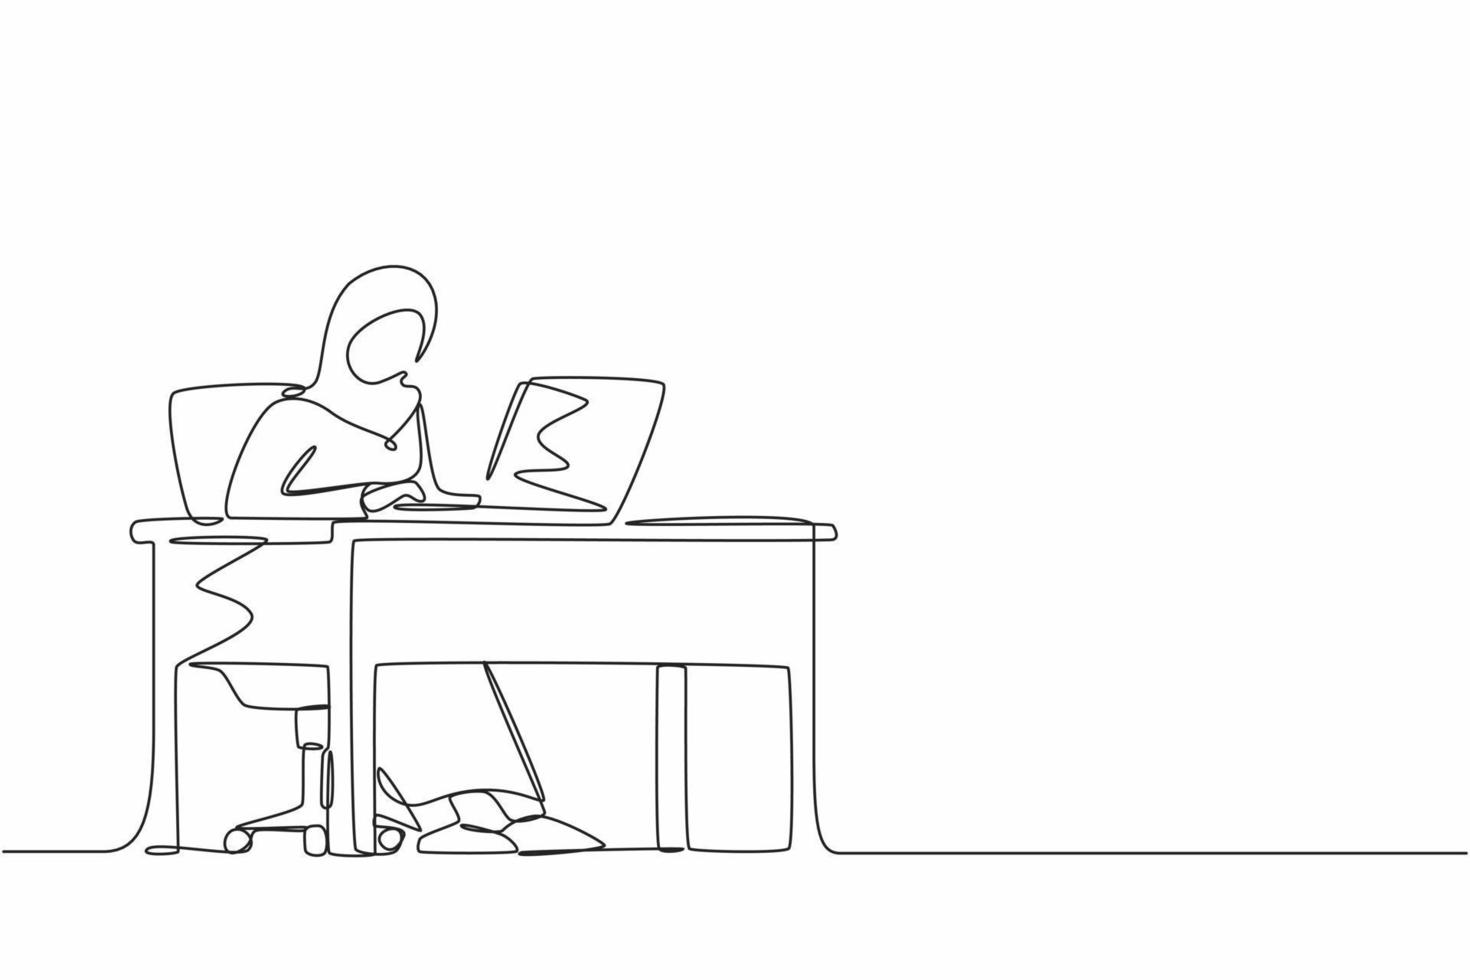 enda kontinuerlig linjeritning arabiska kvinnliga arbetar på kontoret. kvinna som arbetar, skriver och skickar meddelanden. arbete, bord, dator. arbetsplats och kommunikationskoncept. en rad rita grafisk design vektor